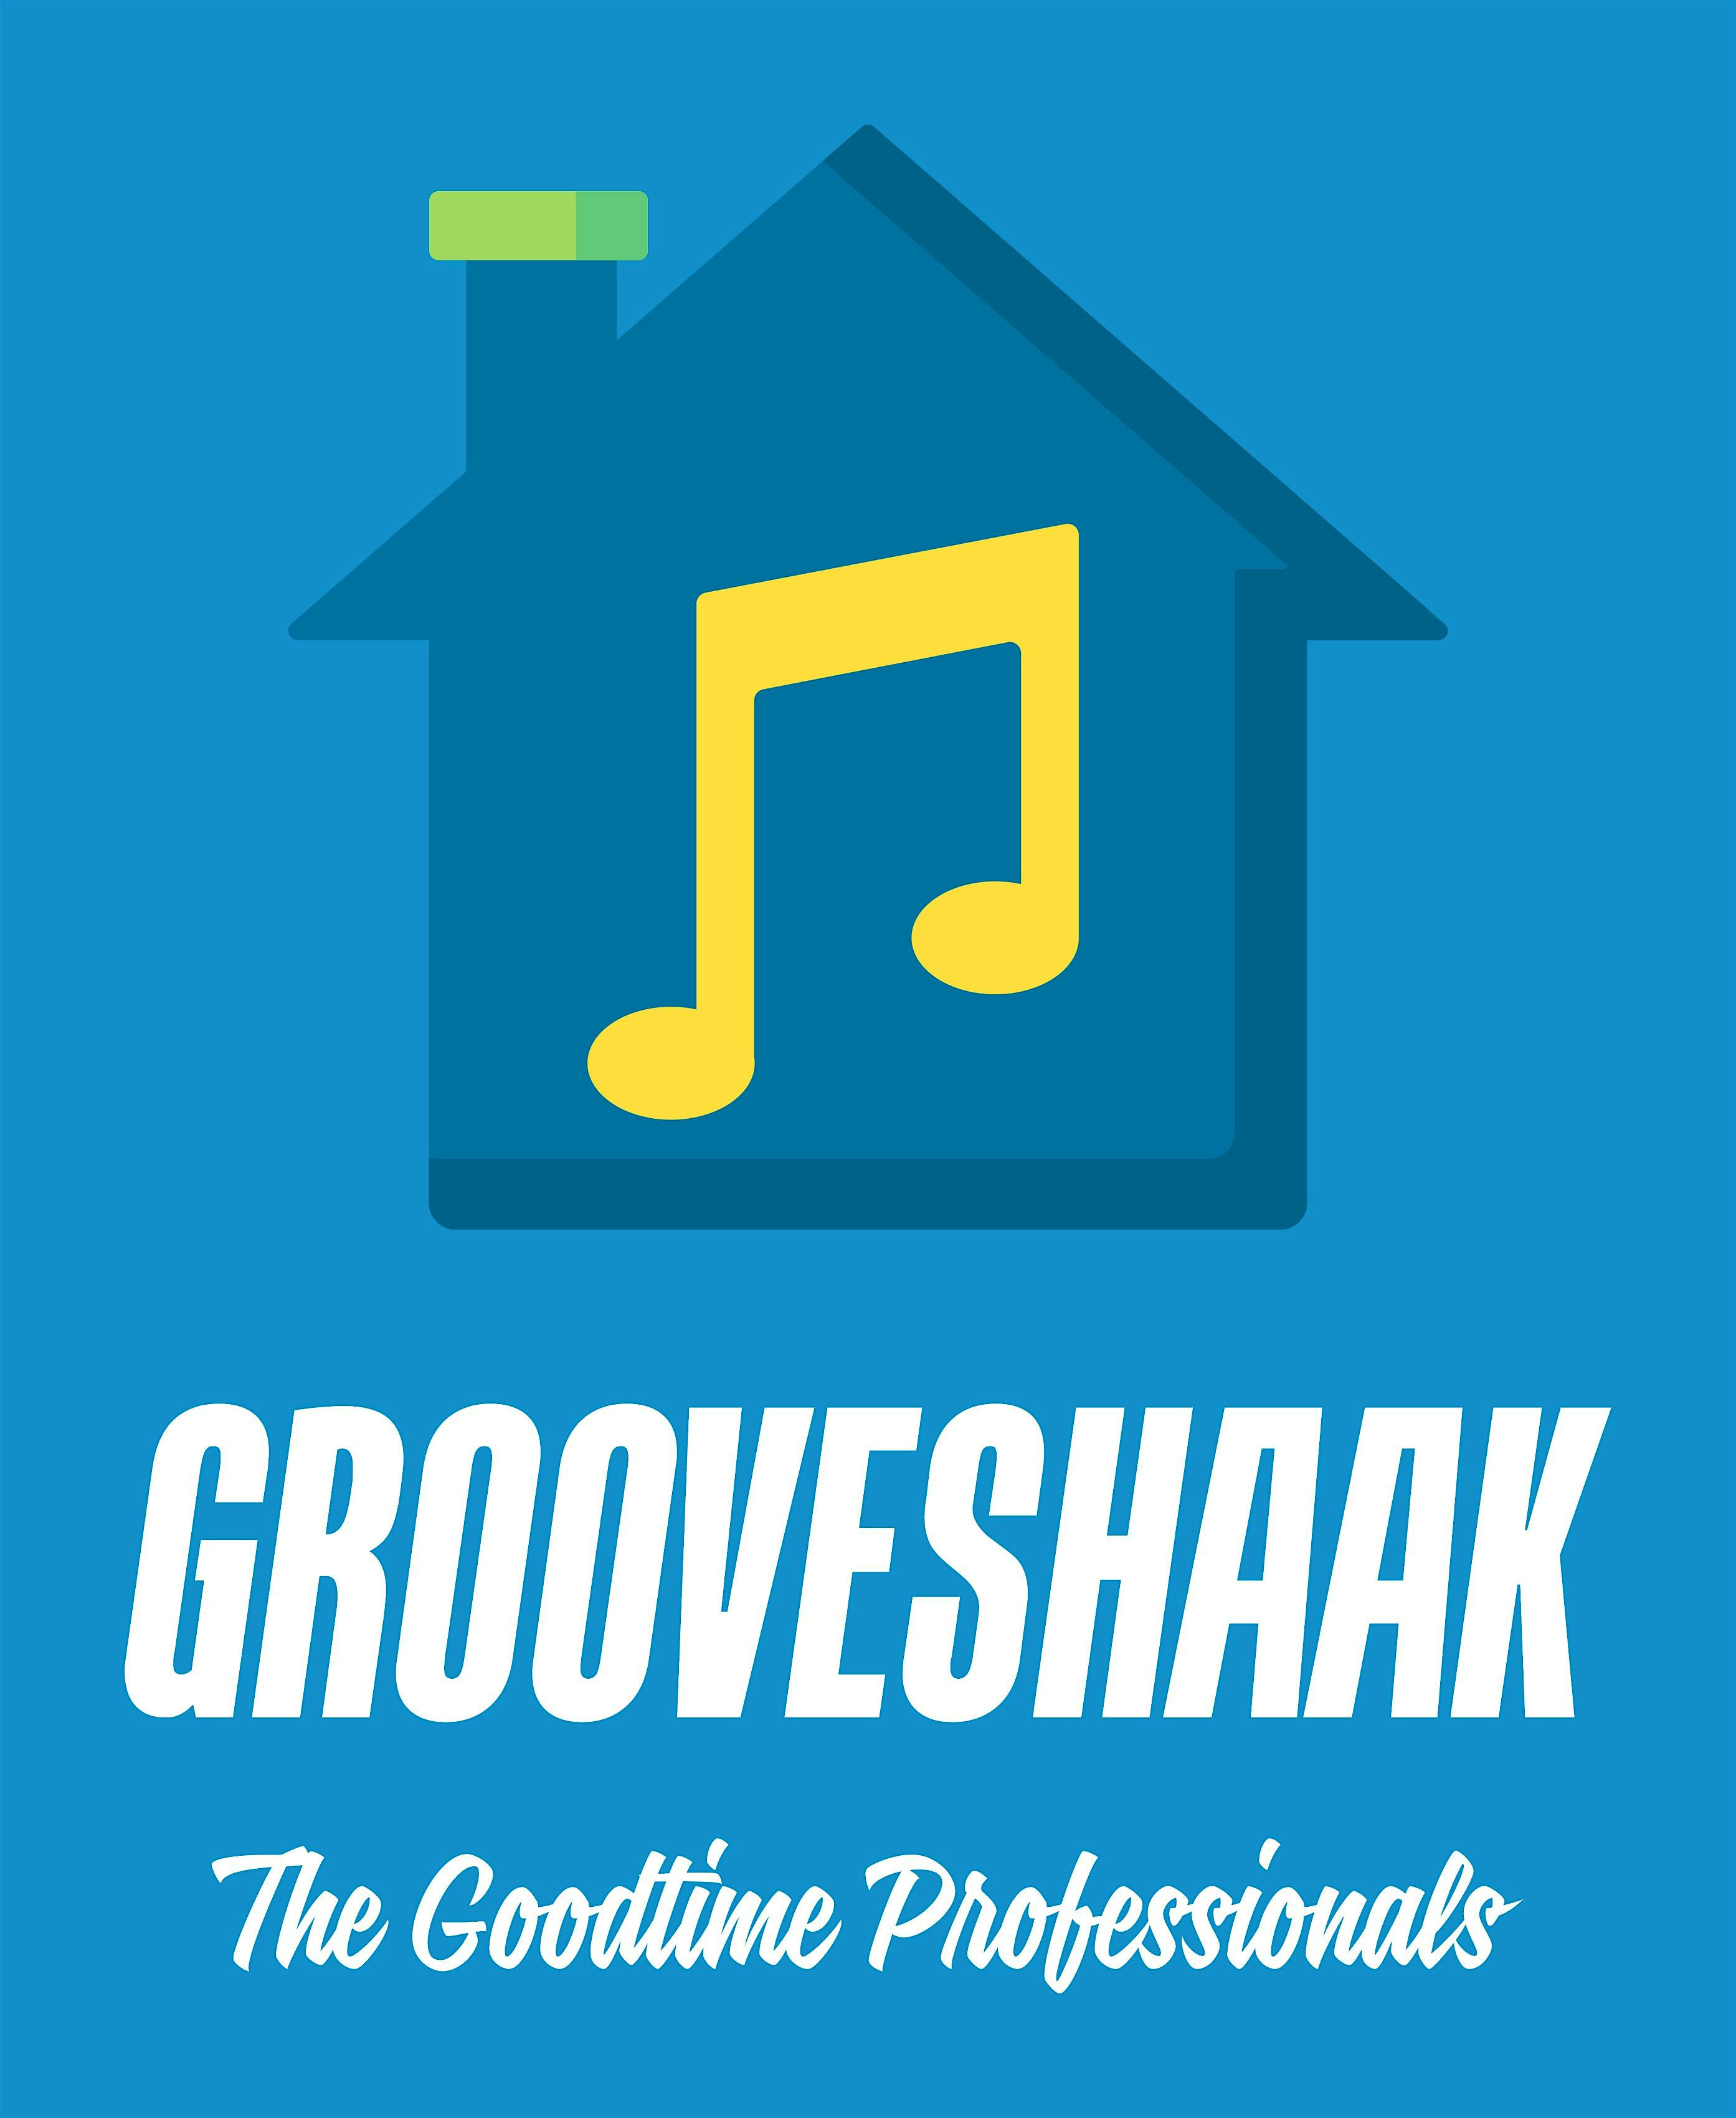 GrooveShaak